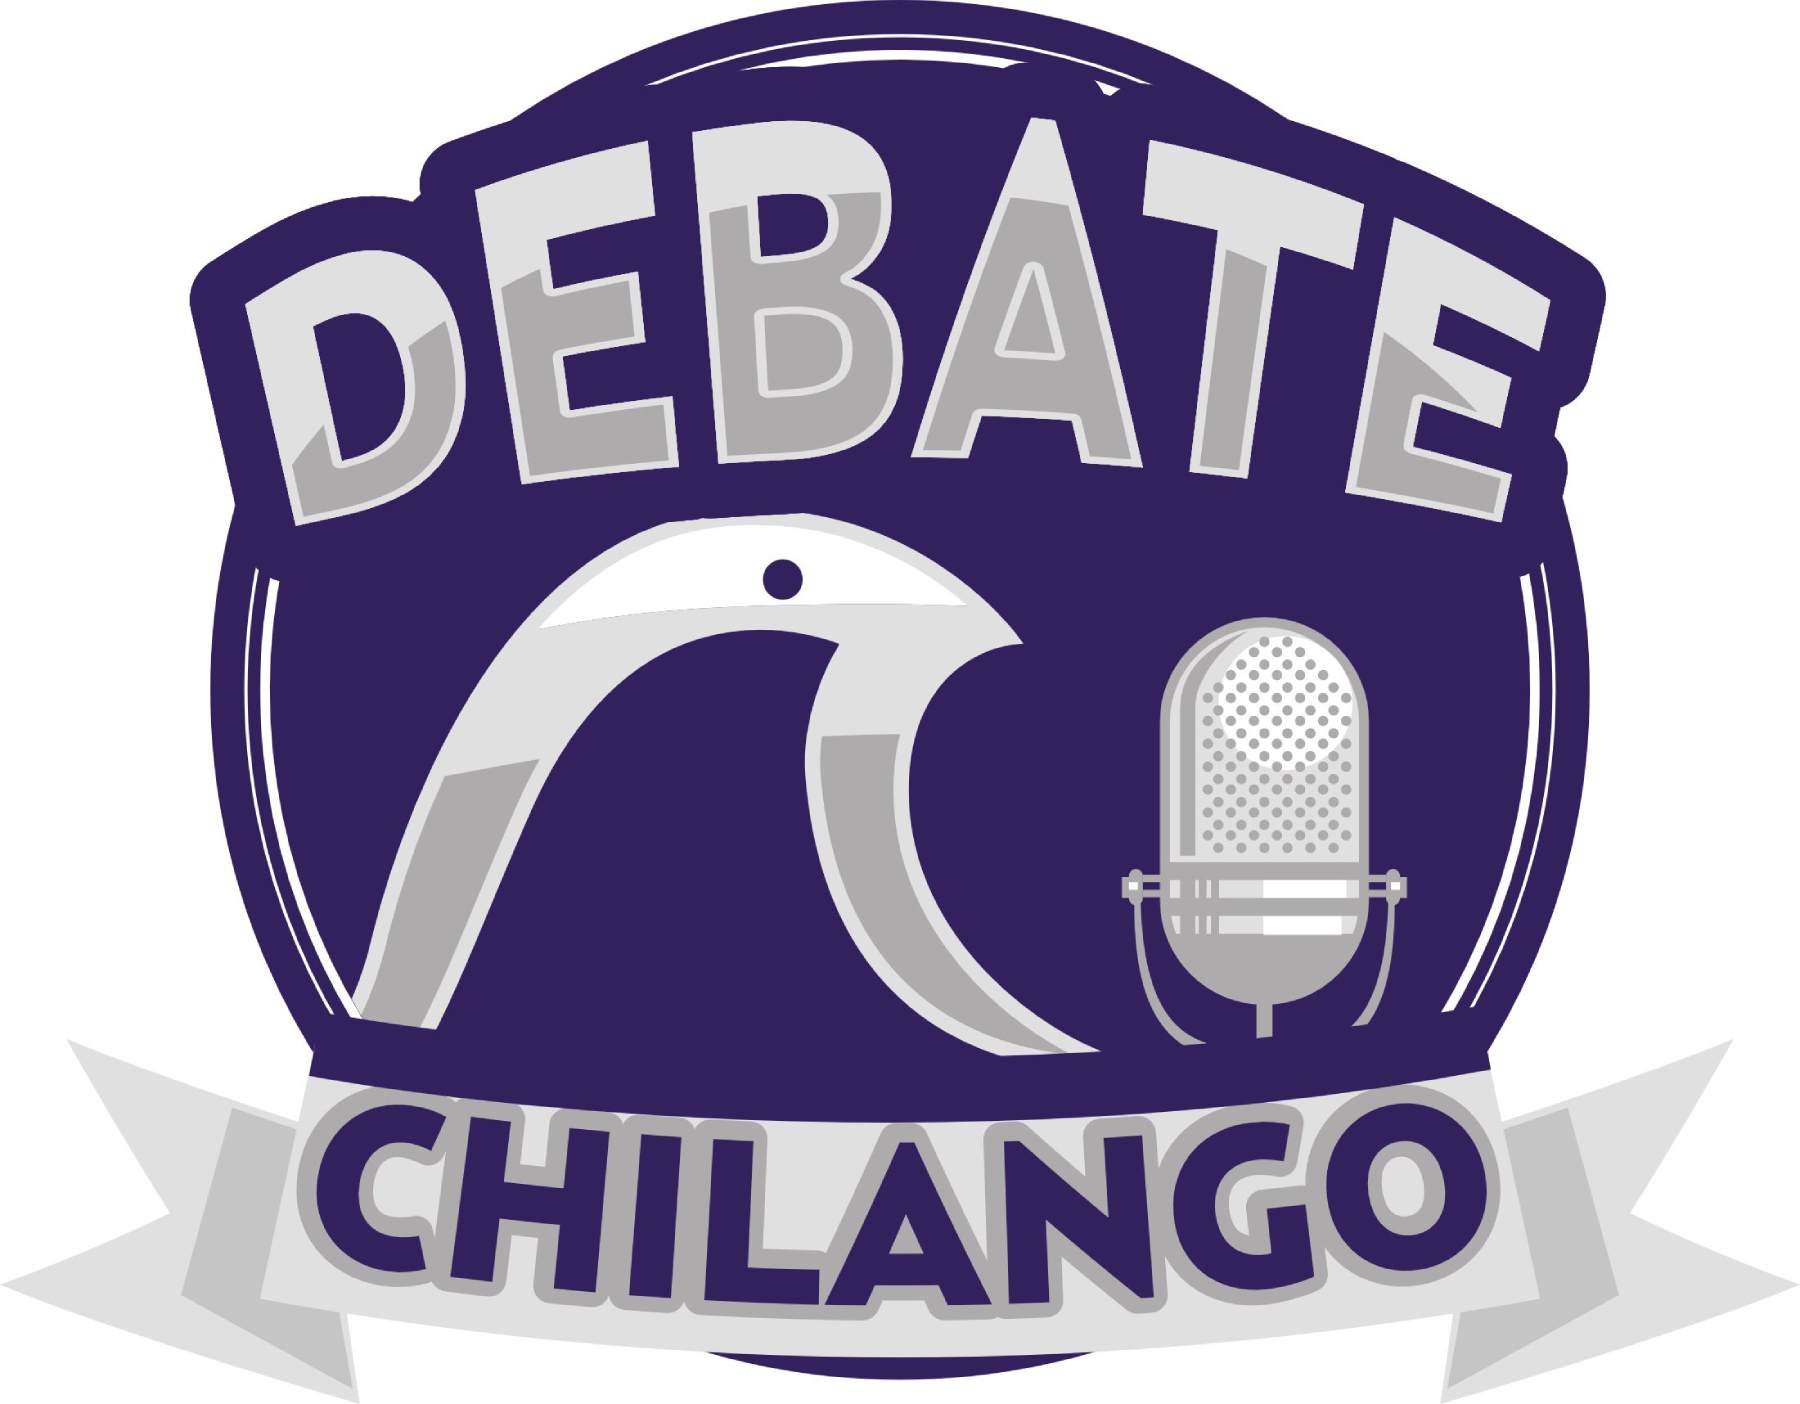 El 'Debate Chilango' empezará a las 8 de la noche.